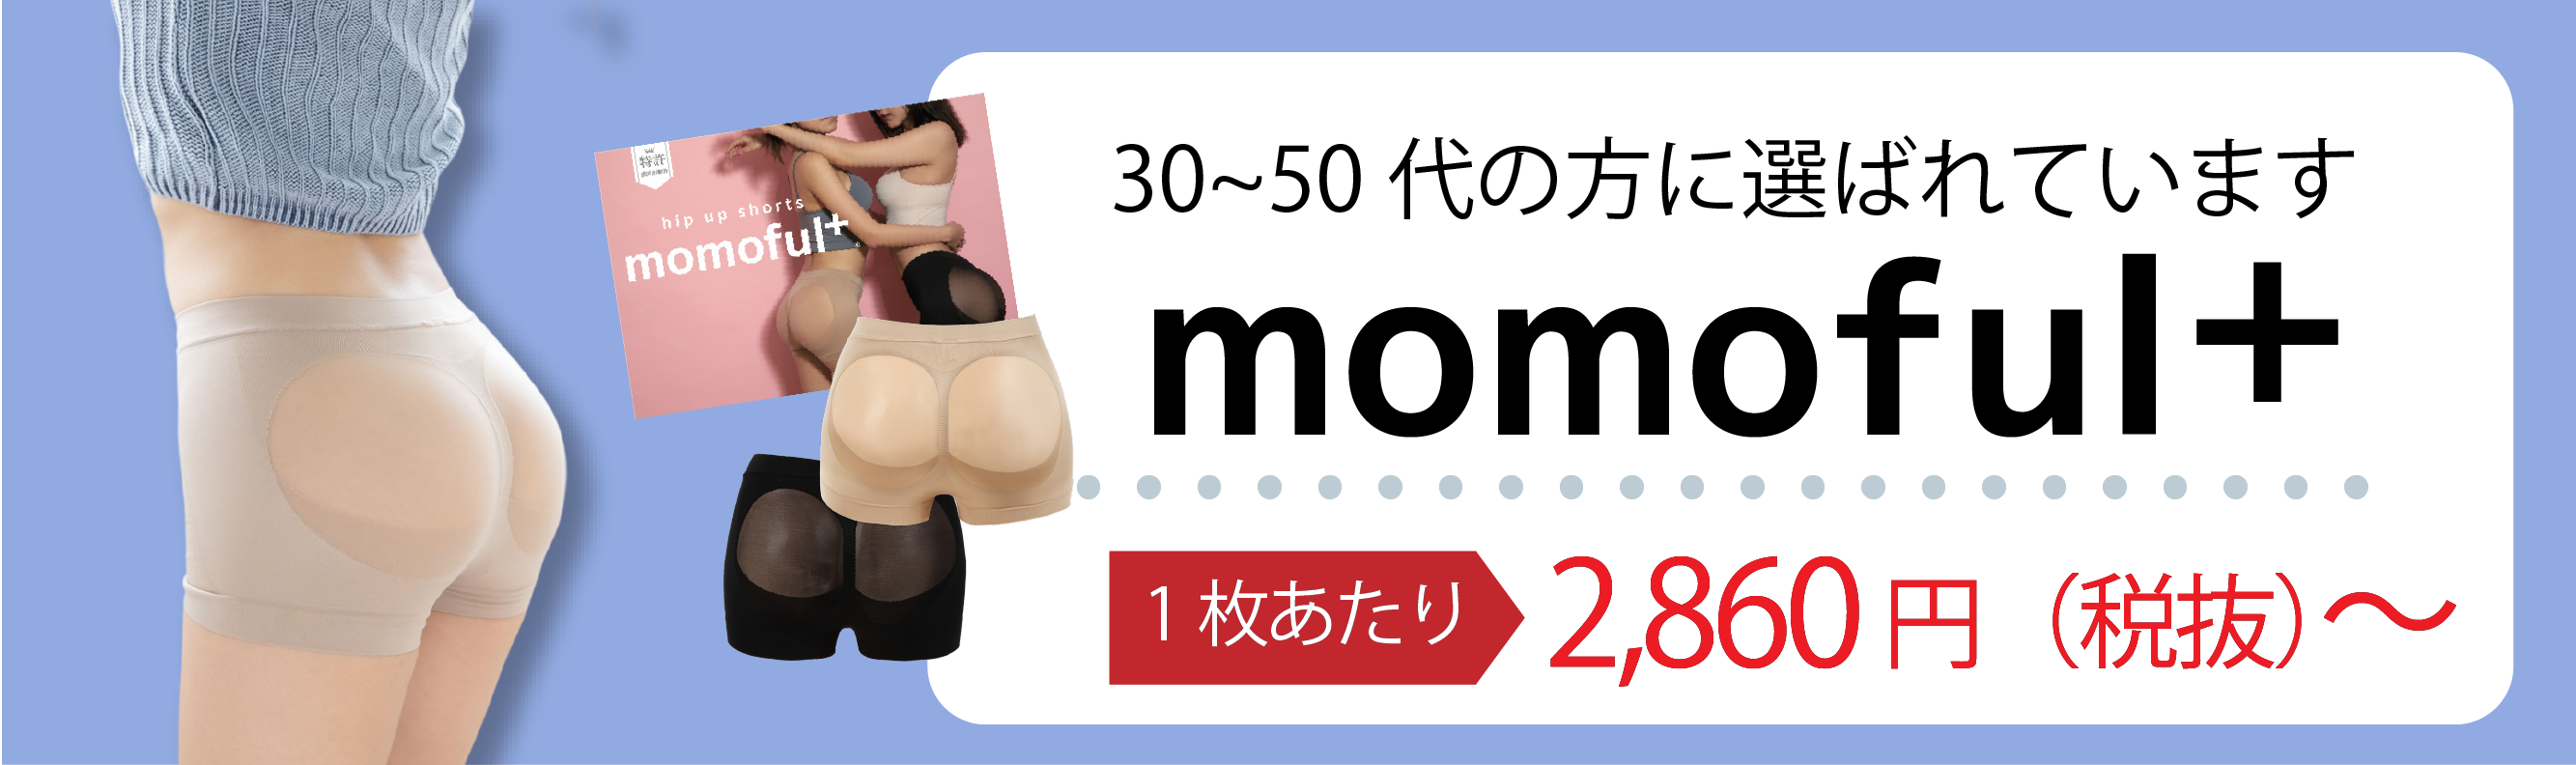 momoful公式 - Yahoo!ショッピング